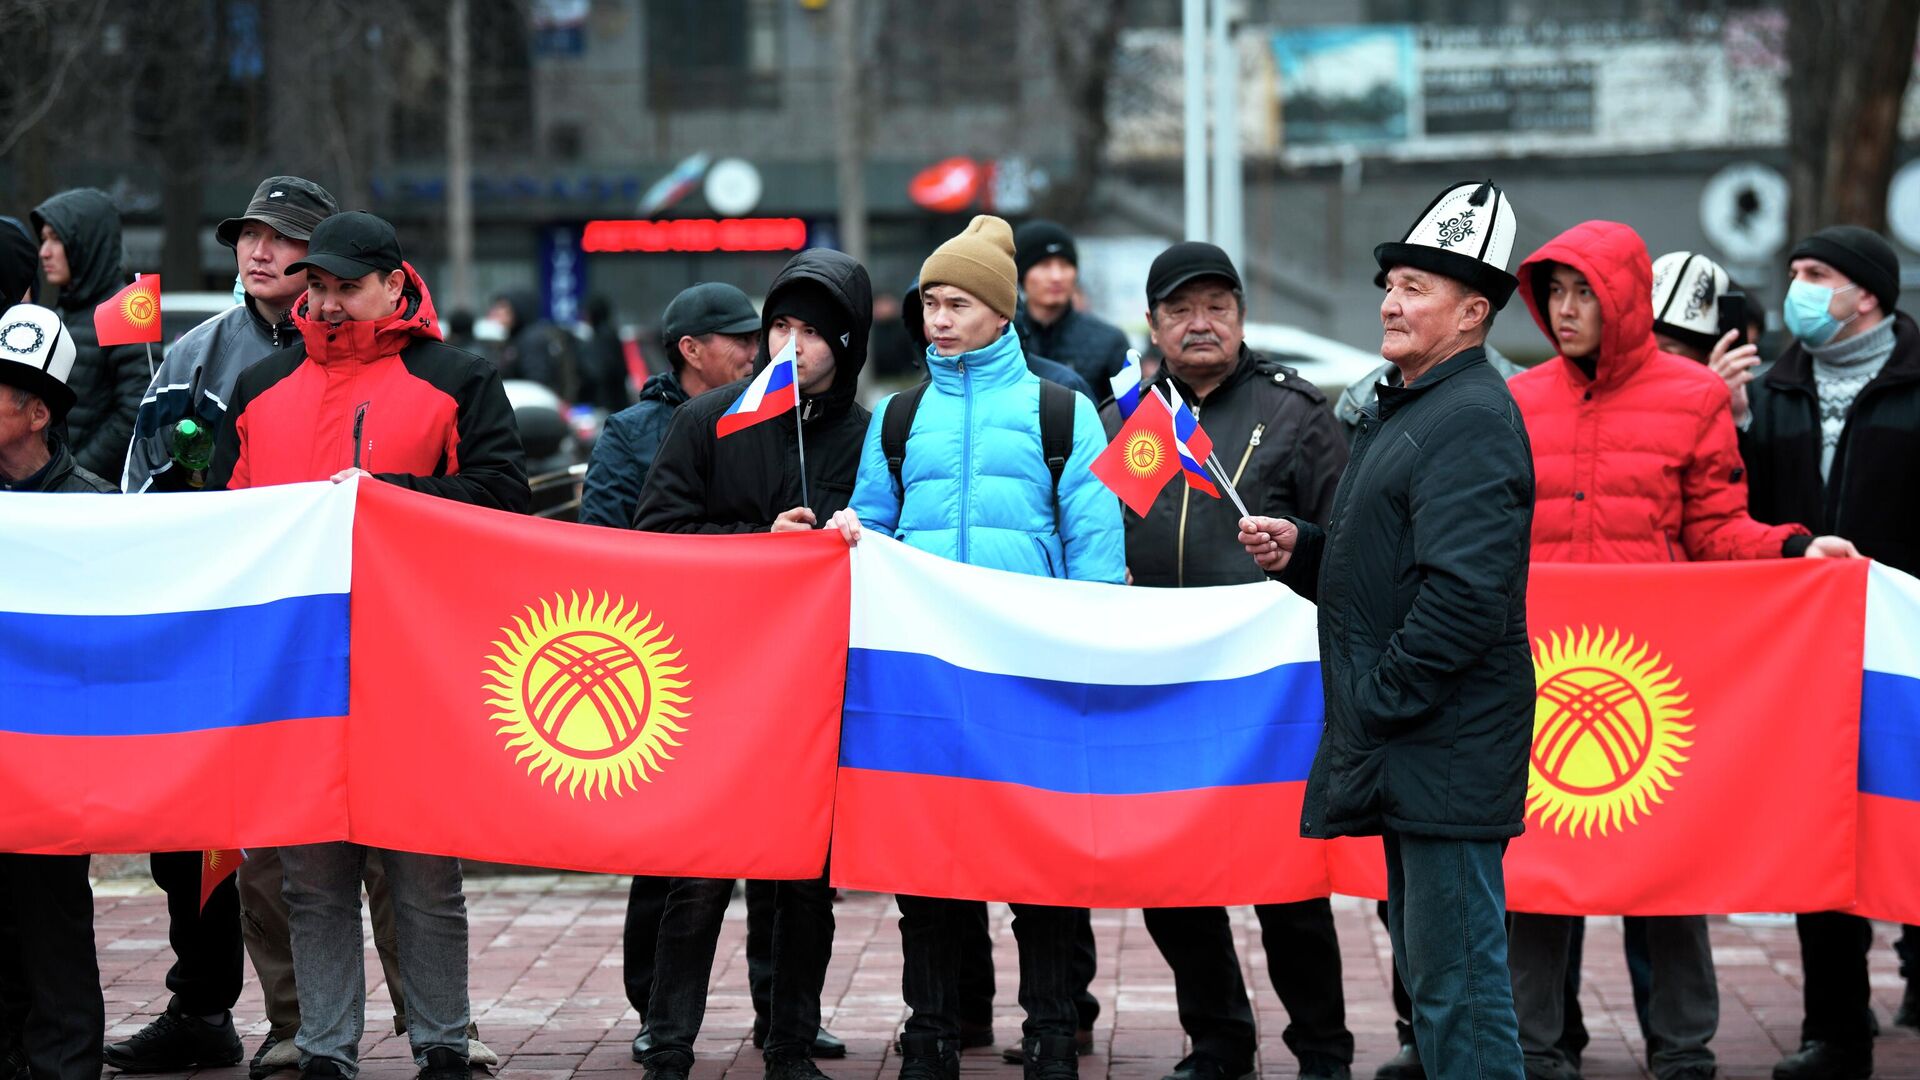 Участники митинга, проходящего в поддержку России и специальной военной операции на Украине, в Бишкеке - РИА Новости, 1920, 22.03.2022